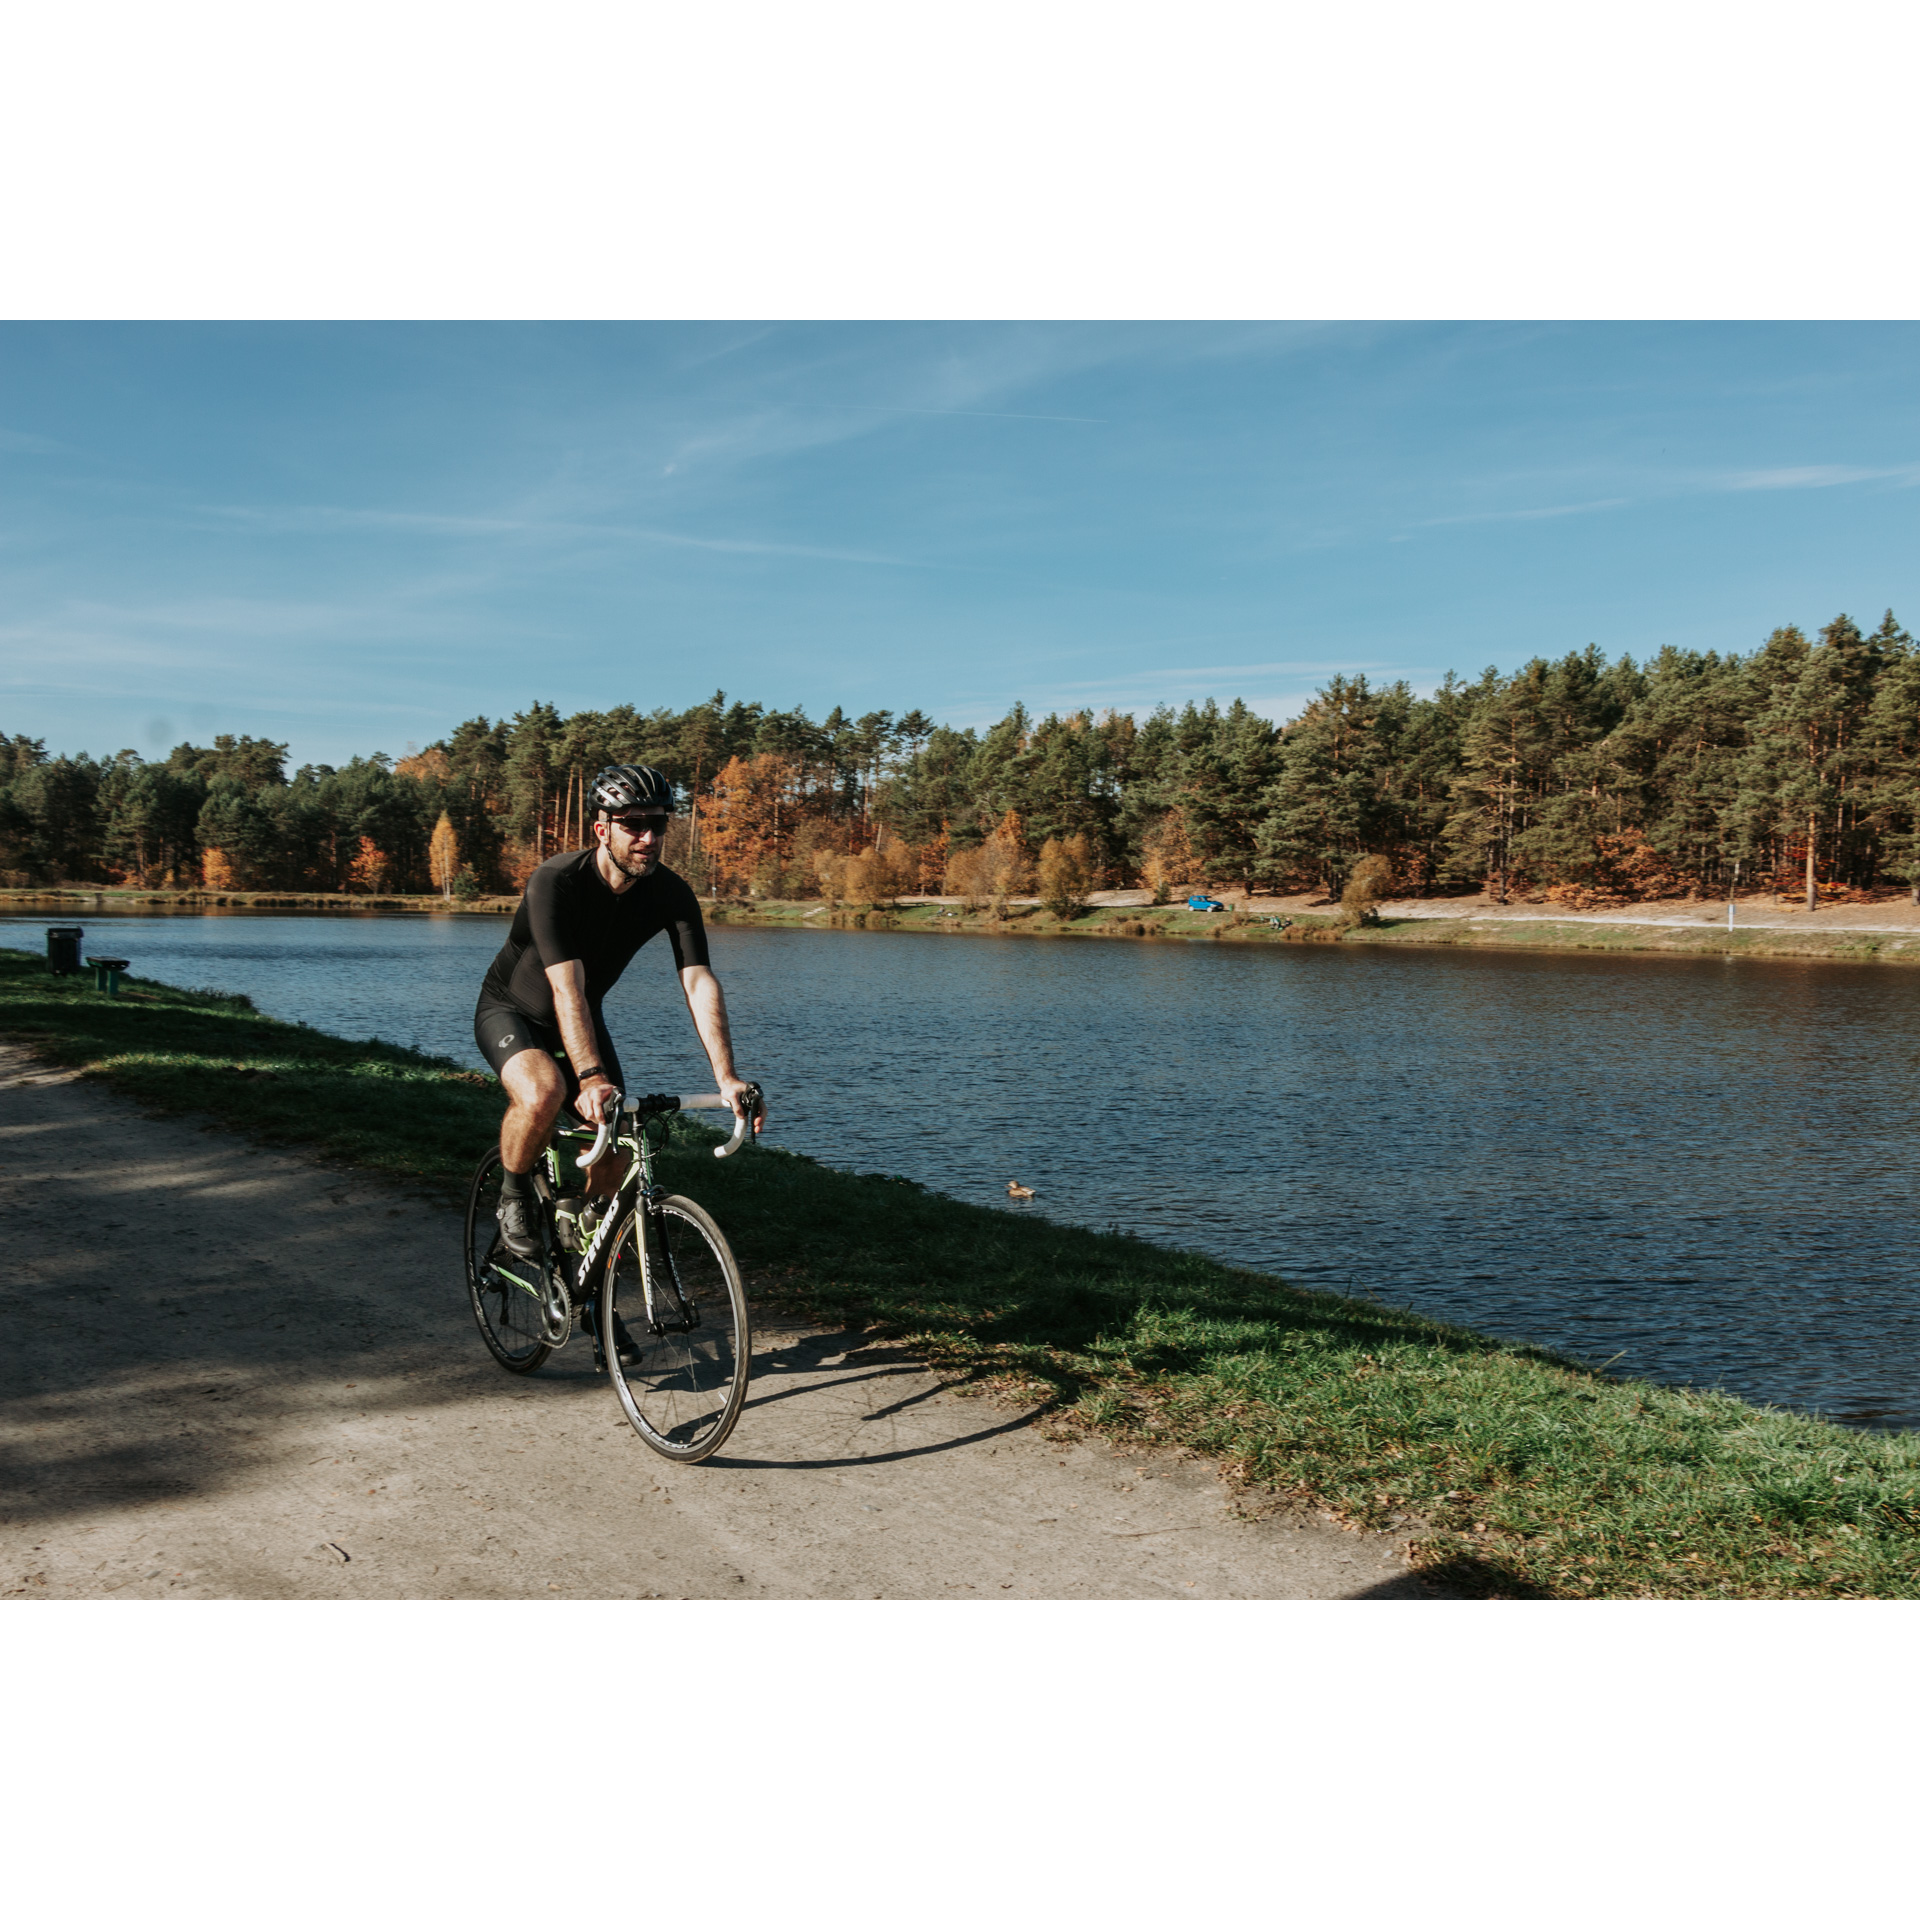 Rowerzysta w czarnym stroju kolarskim, okularach i kasku jadący piaszczystą drogą wzdłuż rzeki, na drugim brzegu rzeki drzewa